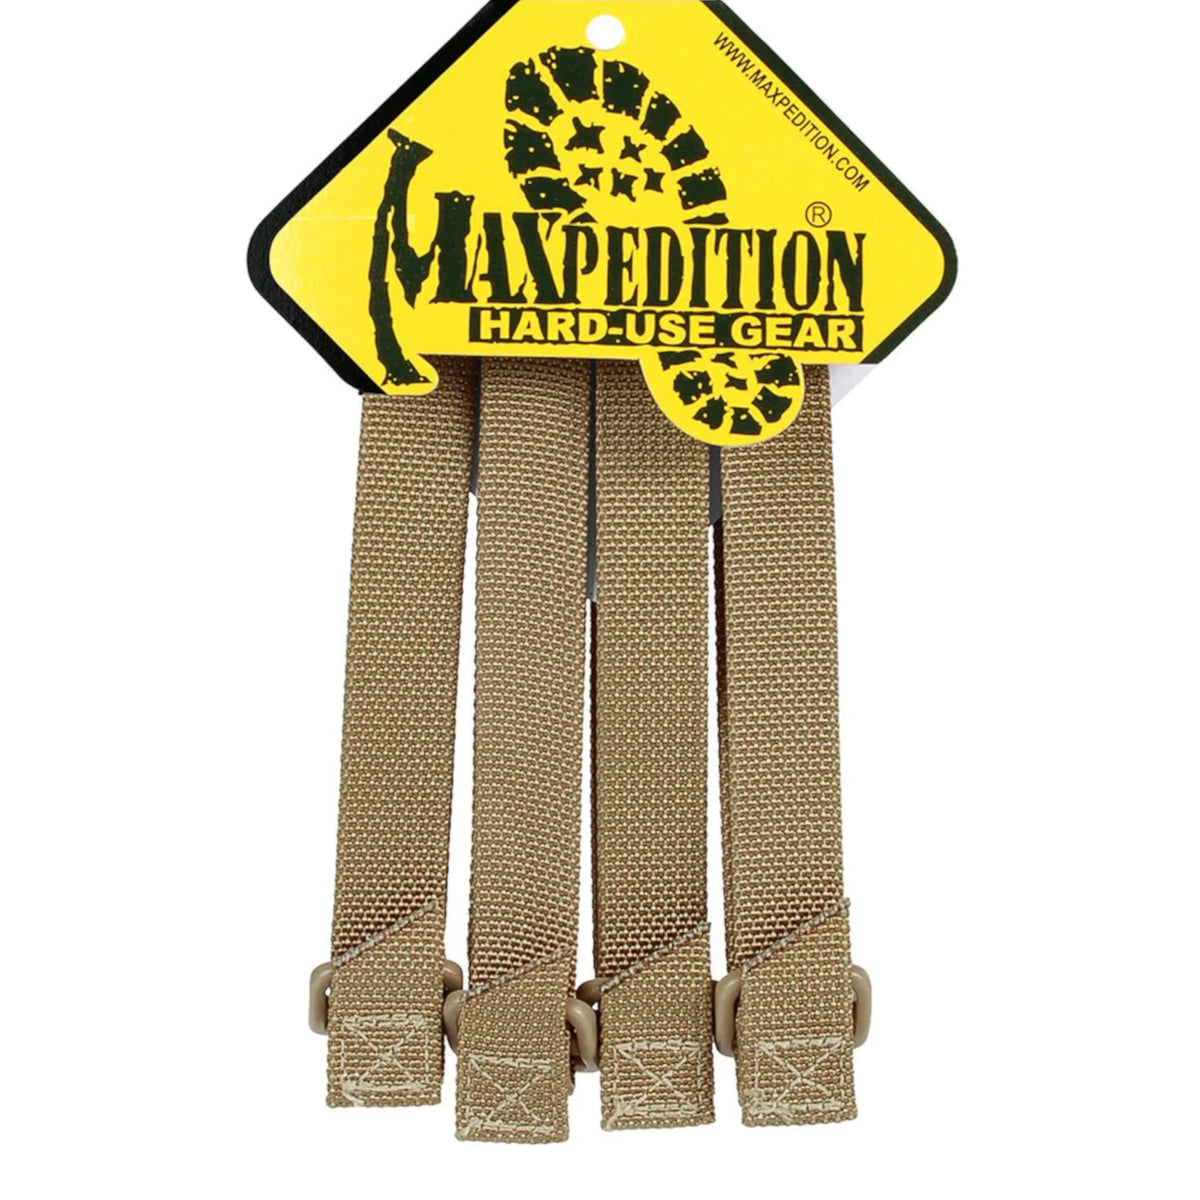 Le TacTie di Maxpedition nella variante khaki da 12.7cm nella loro confezione